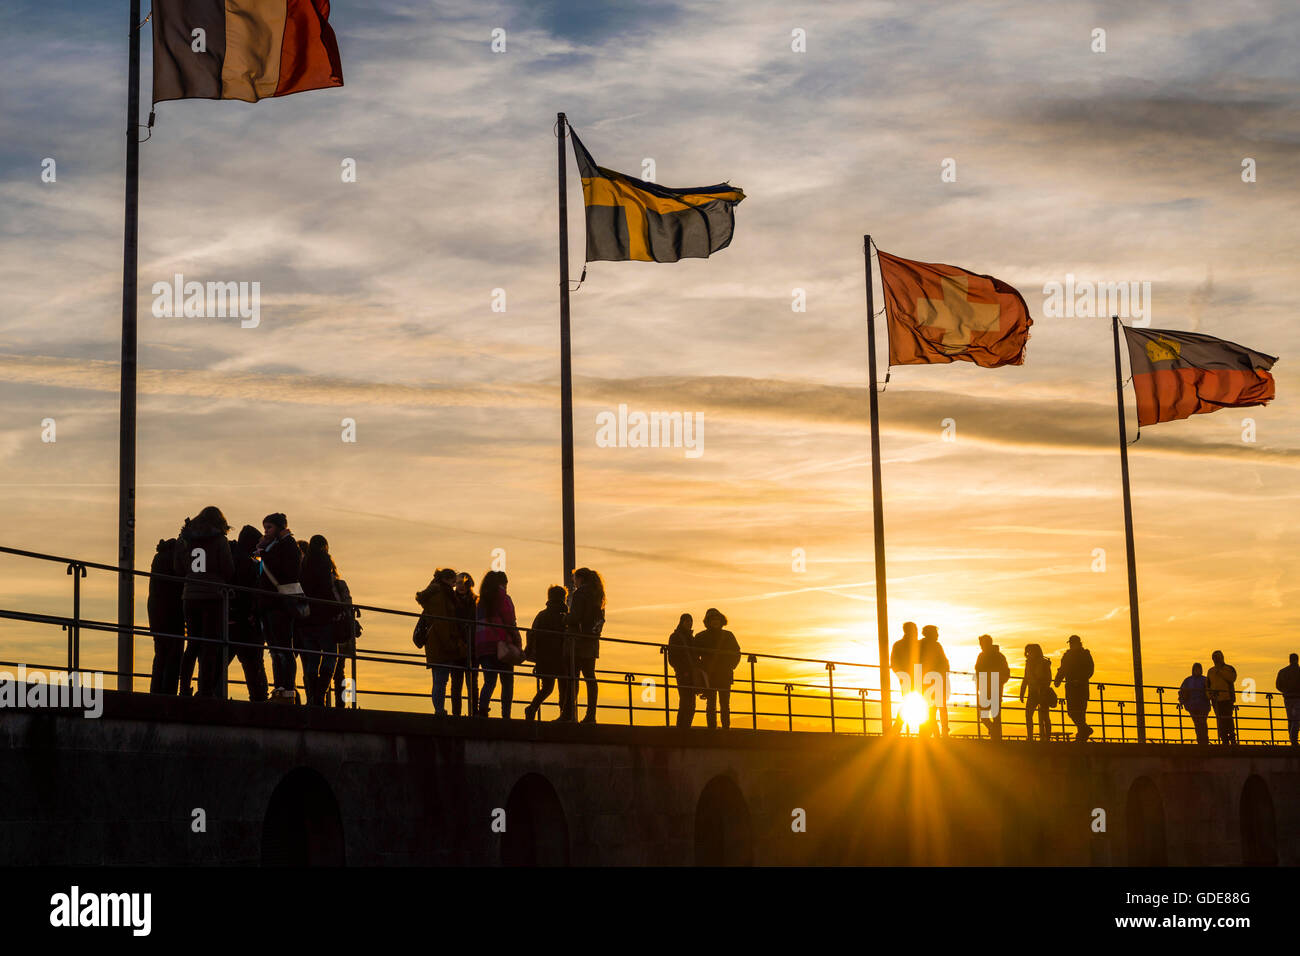 Les gens silhouettes,drapeaux,port,,port,à Lindau,Allemagne,europe,Bavarois Banque D'Images